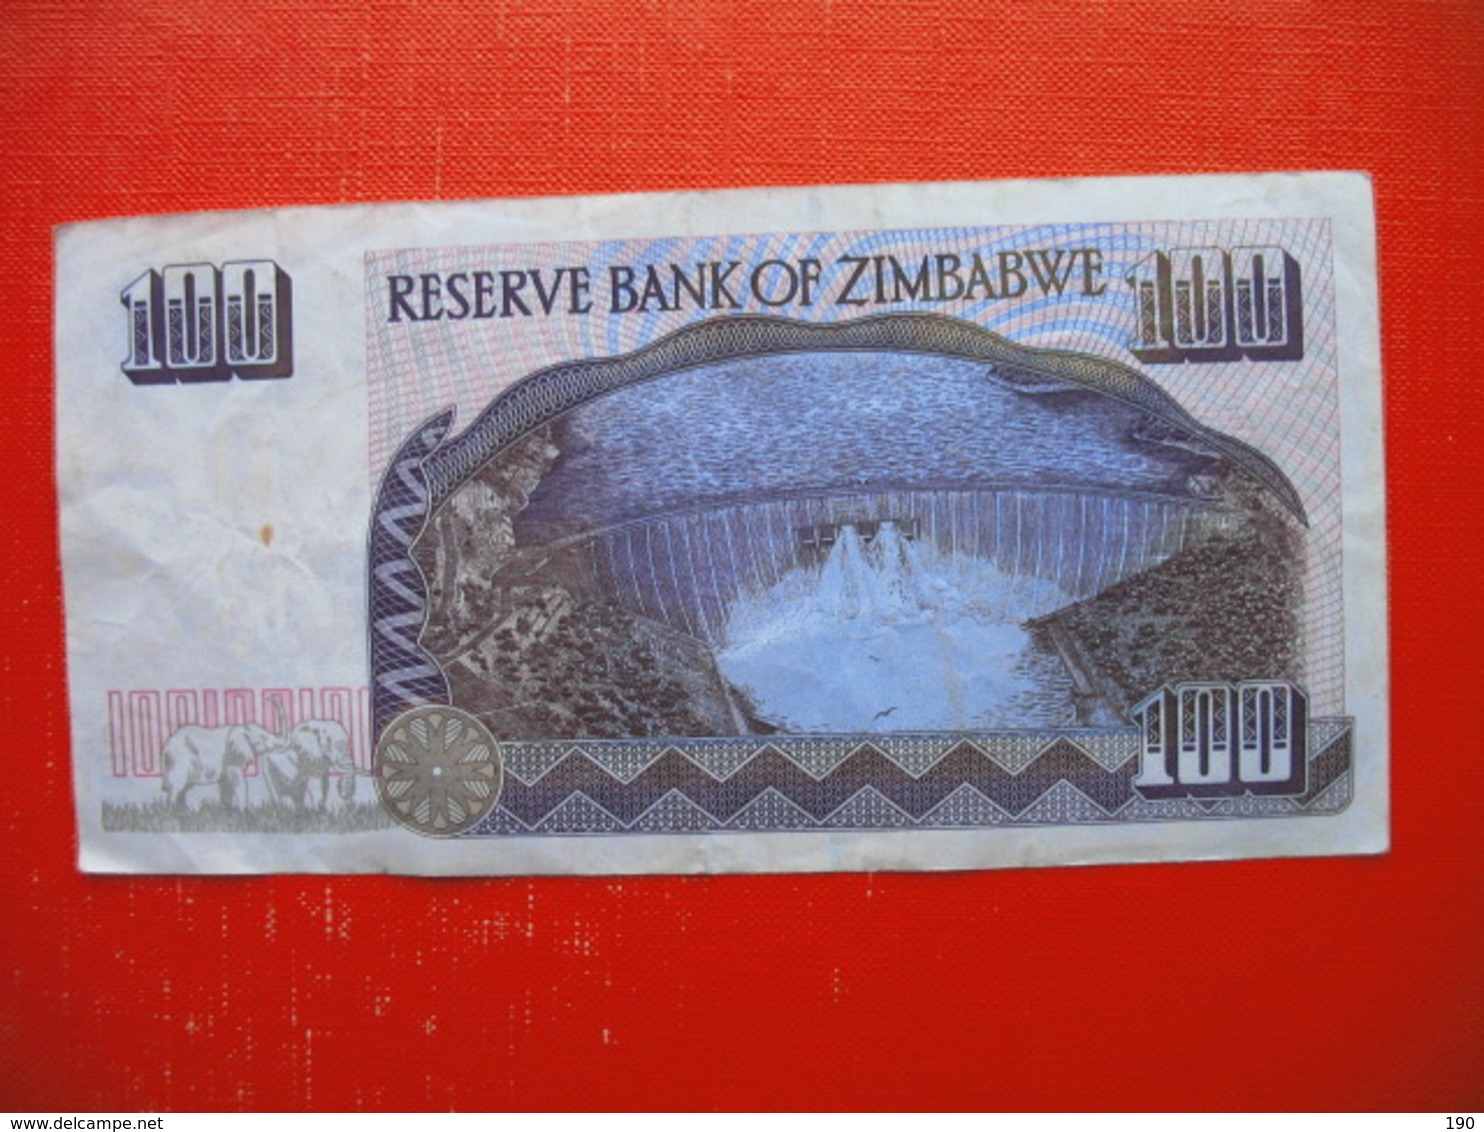 100 DOLLARS - Zimbabwe